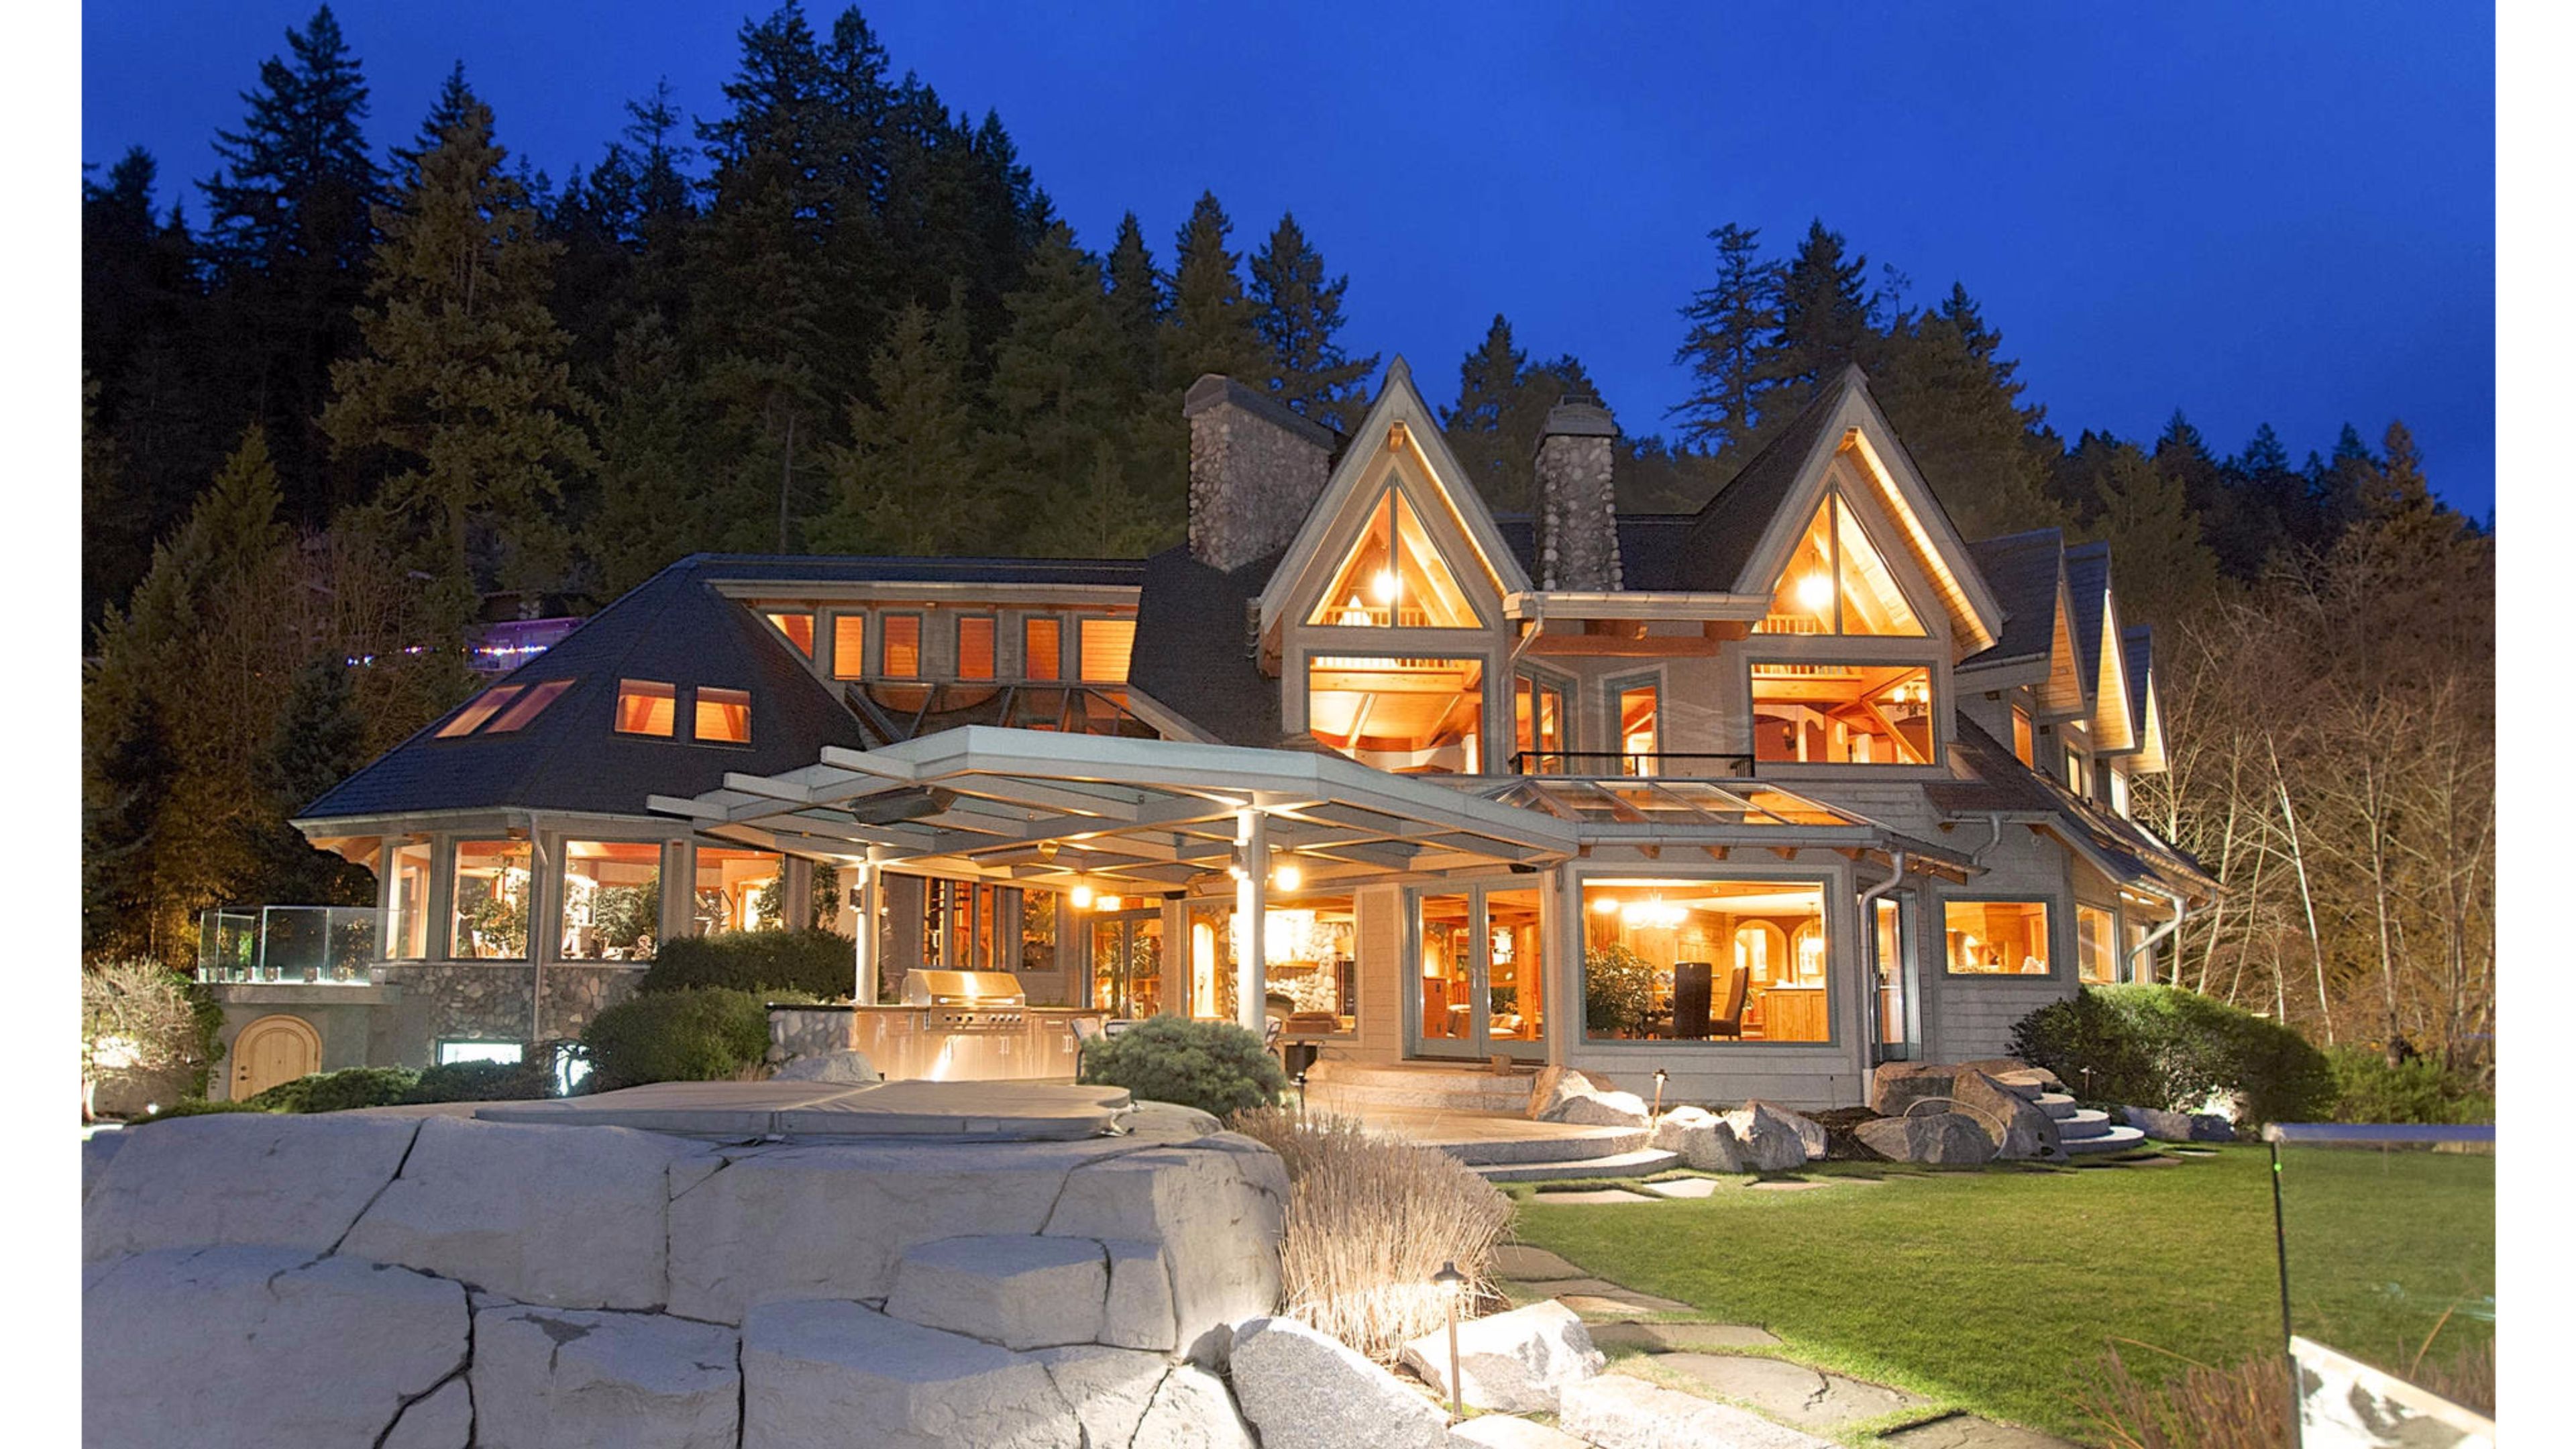 Hình ảnh ngôi nhà tuyệt đẹp tại Vancouver, Canada mang đến cho bạn không gian sống yên bình và đẳng cấp. Với kiến trúc thiết kế hiện đại và đầy đủ tiện nghi, ngôi nhà xoay quanh giữa thiên nhiên và góc nhìn tuyệt vời. Khám phá ngay hình ảnh đẹp này để trải nghiệm nét đẹp của Vancouver! 